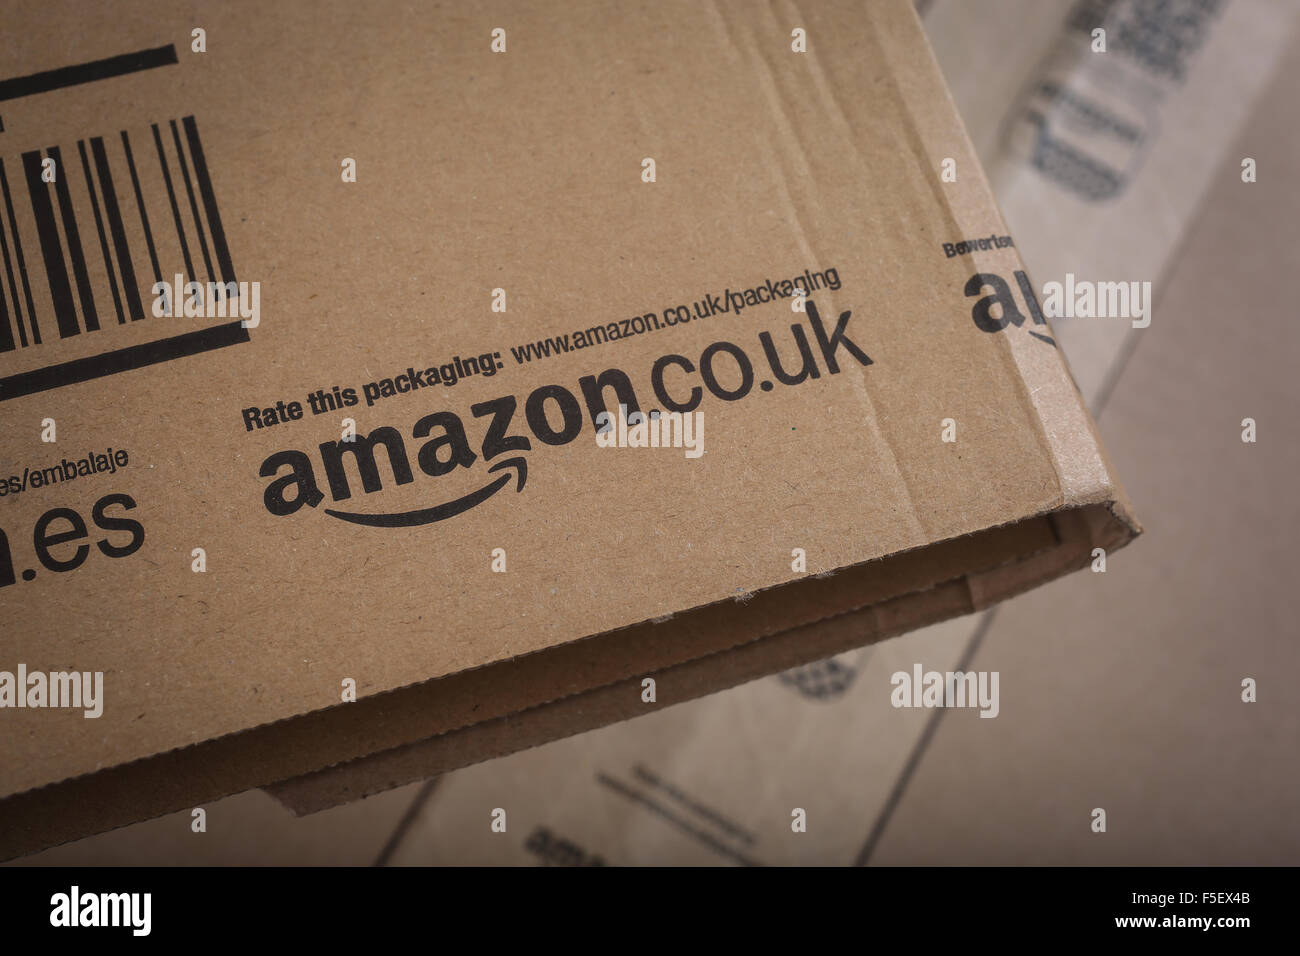 Los paquetes entregados desde Amazon.co.uk Foto de stock